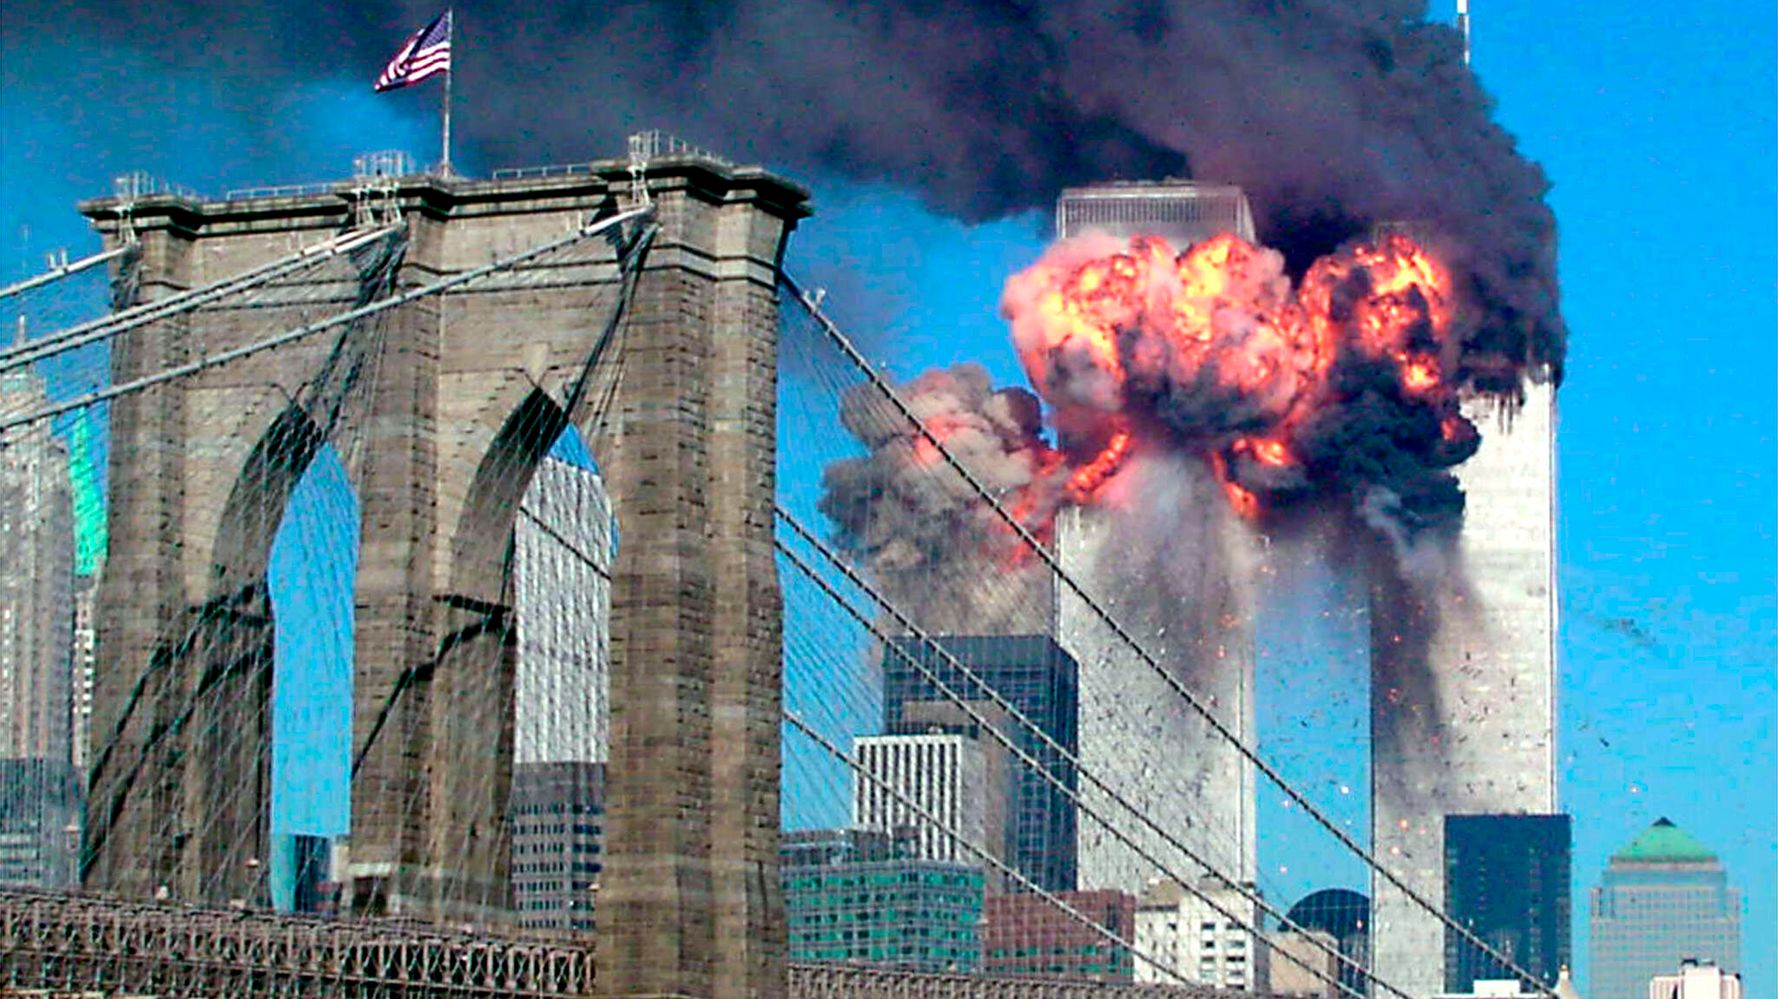 Photos Show The Chaos, Heartbreak Of 9/11 Attacks